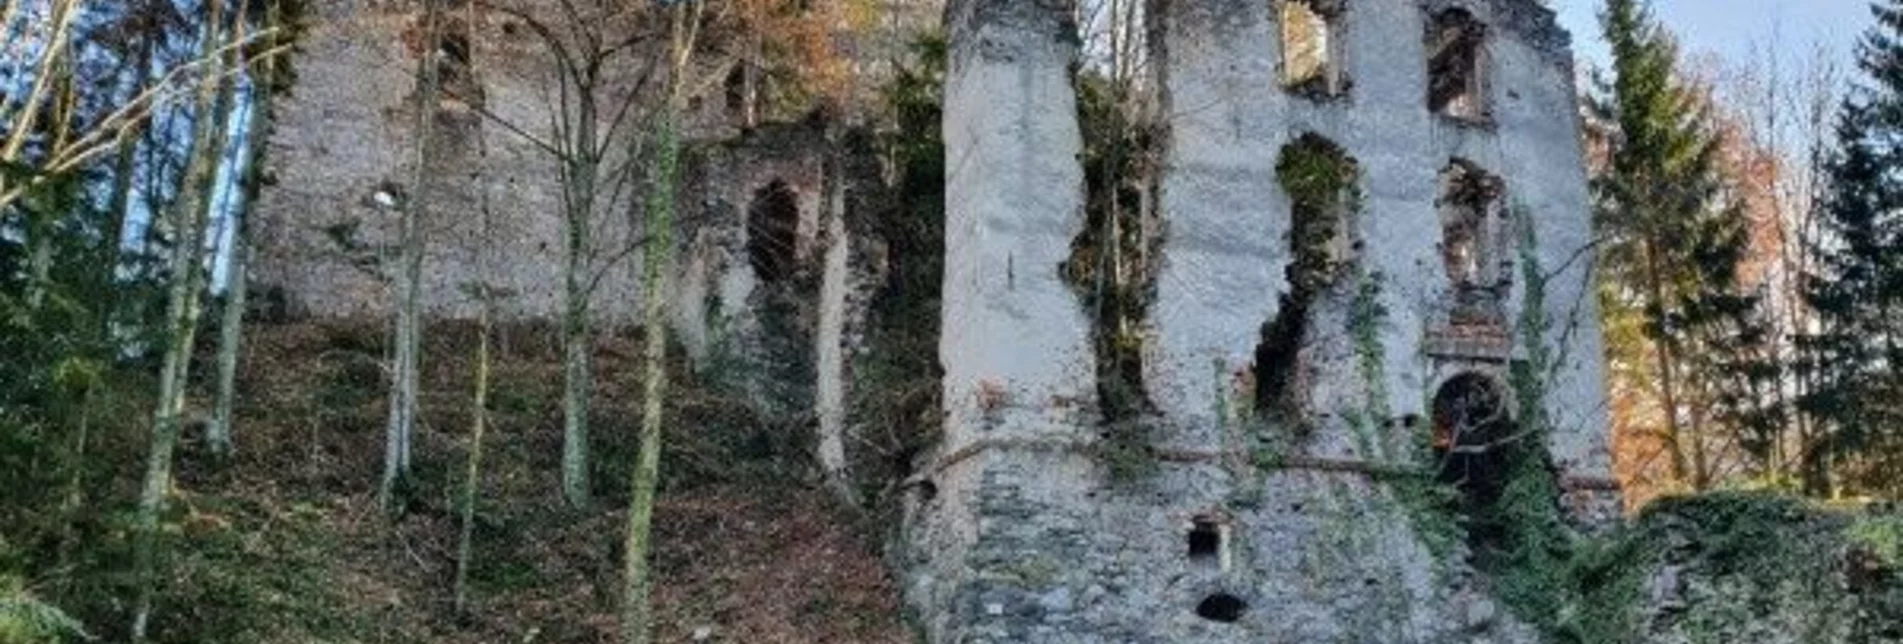 Ruine Waxenegg | © Mythische Unter & Oberwelten Anger